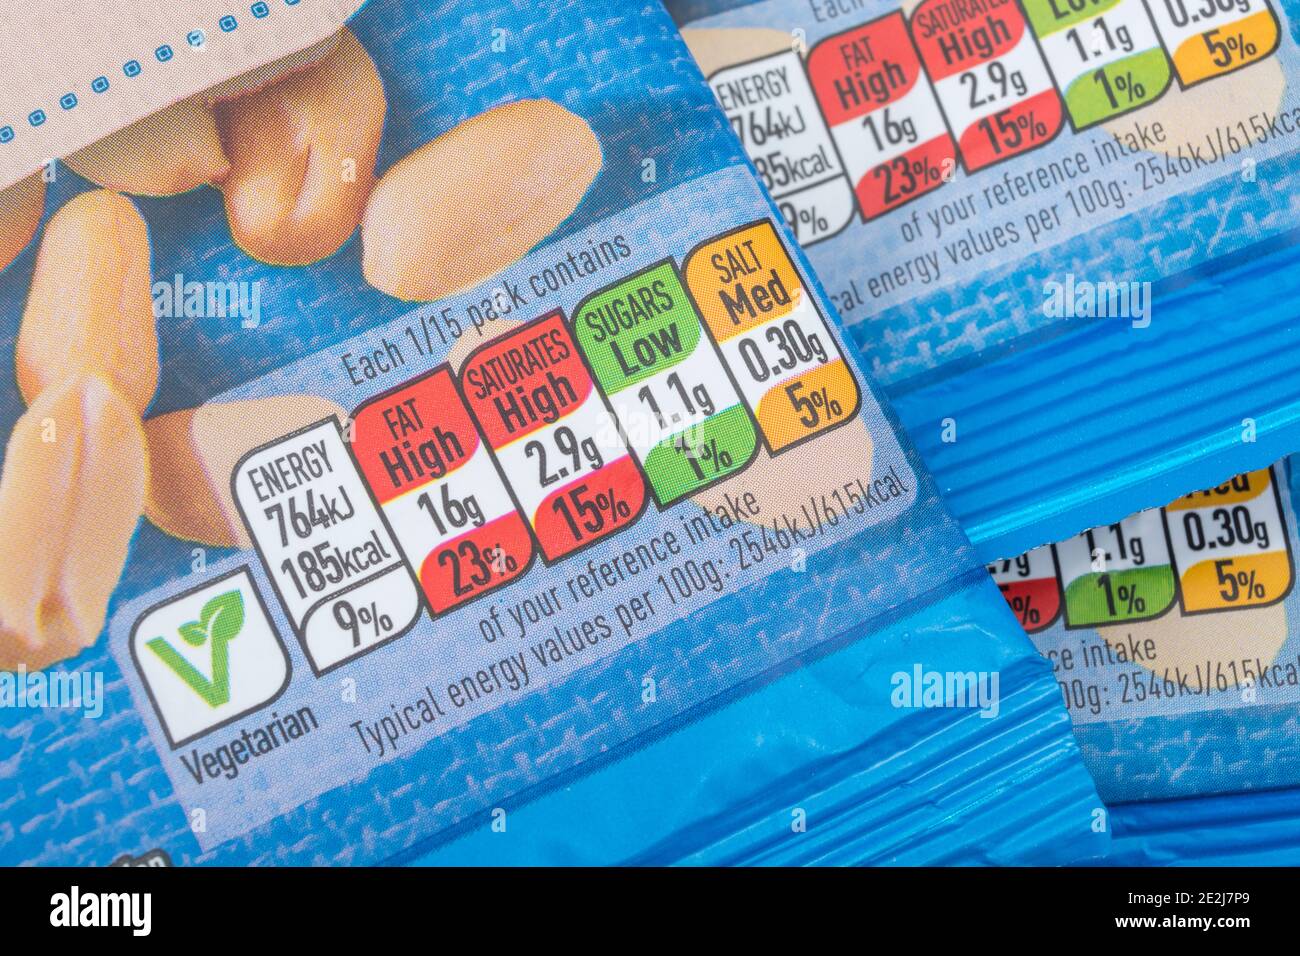 Gros plan des boîtes d'information nutritionnelle avec code couleur sur l'avant des arachides salées ASDA emballées en plastique. Graisses alimentaires / graisses dans l'étiquetage des aliments. Banque D'Images